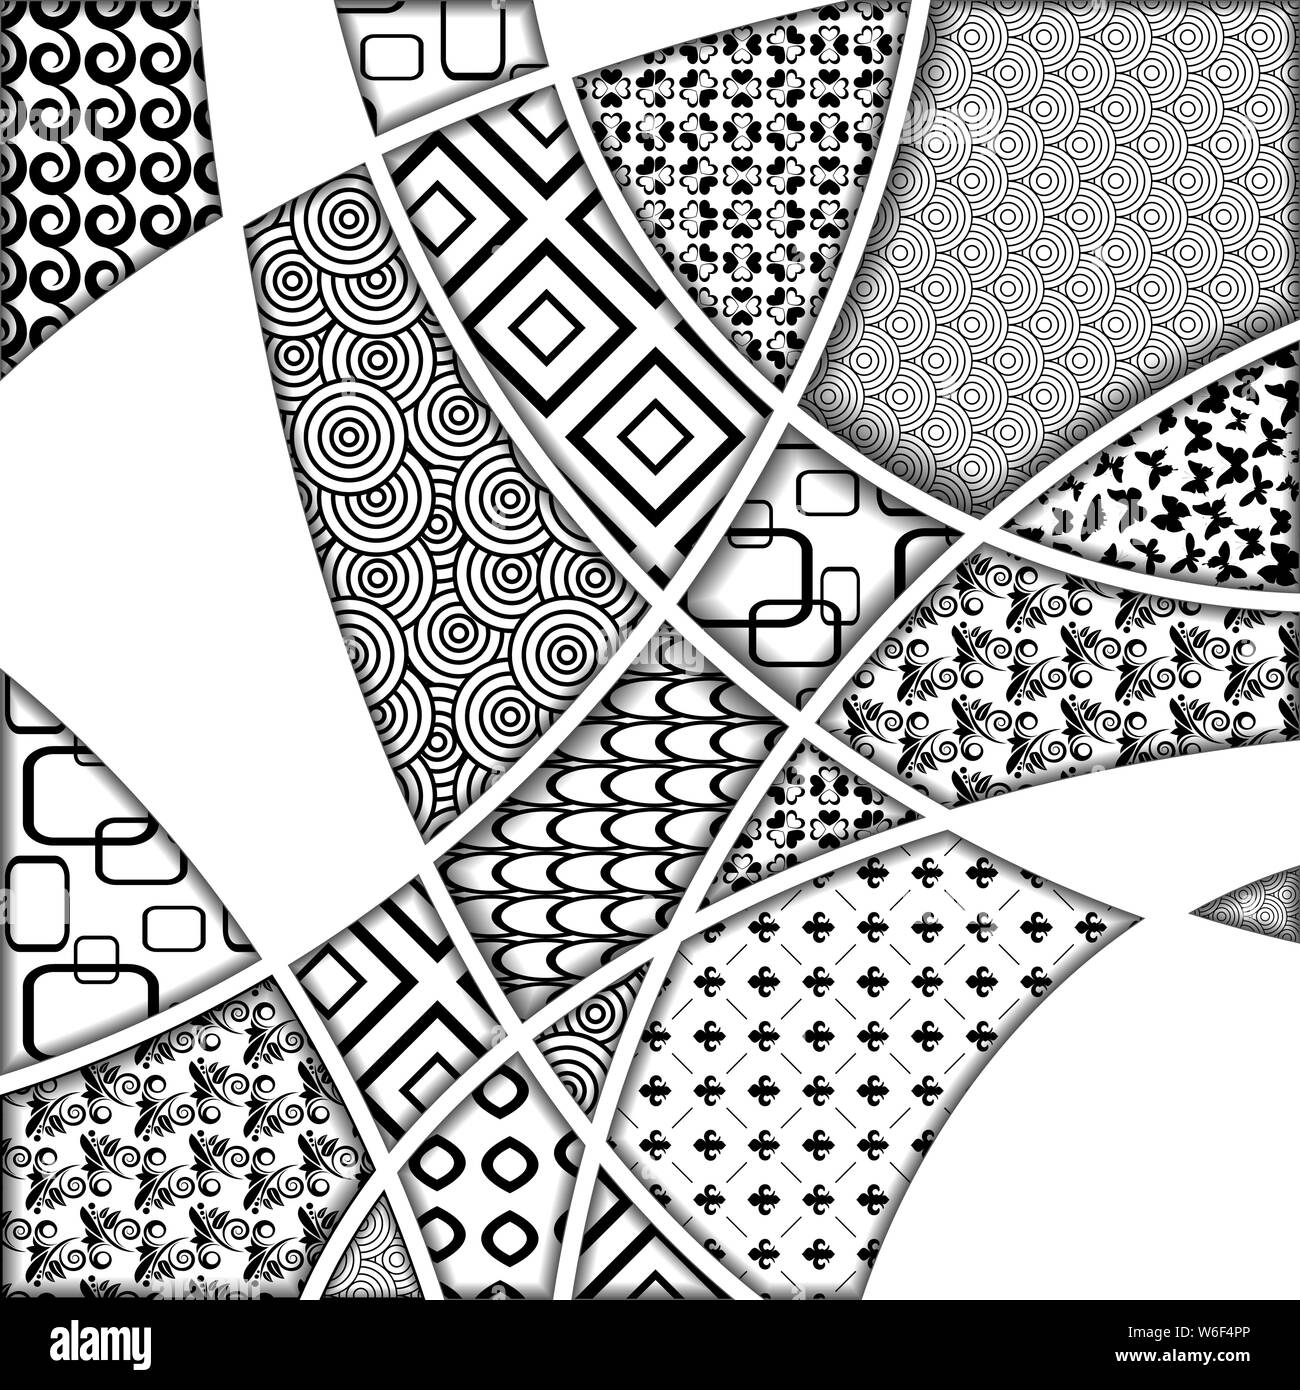 Jeu de noir et blanc différents modèles carrés zentangle Illustration de Vecteur